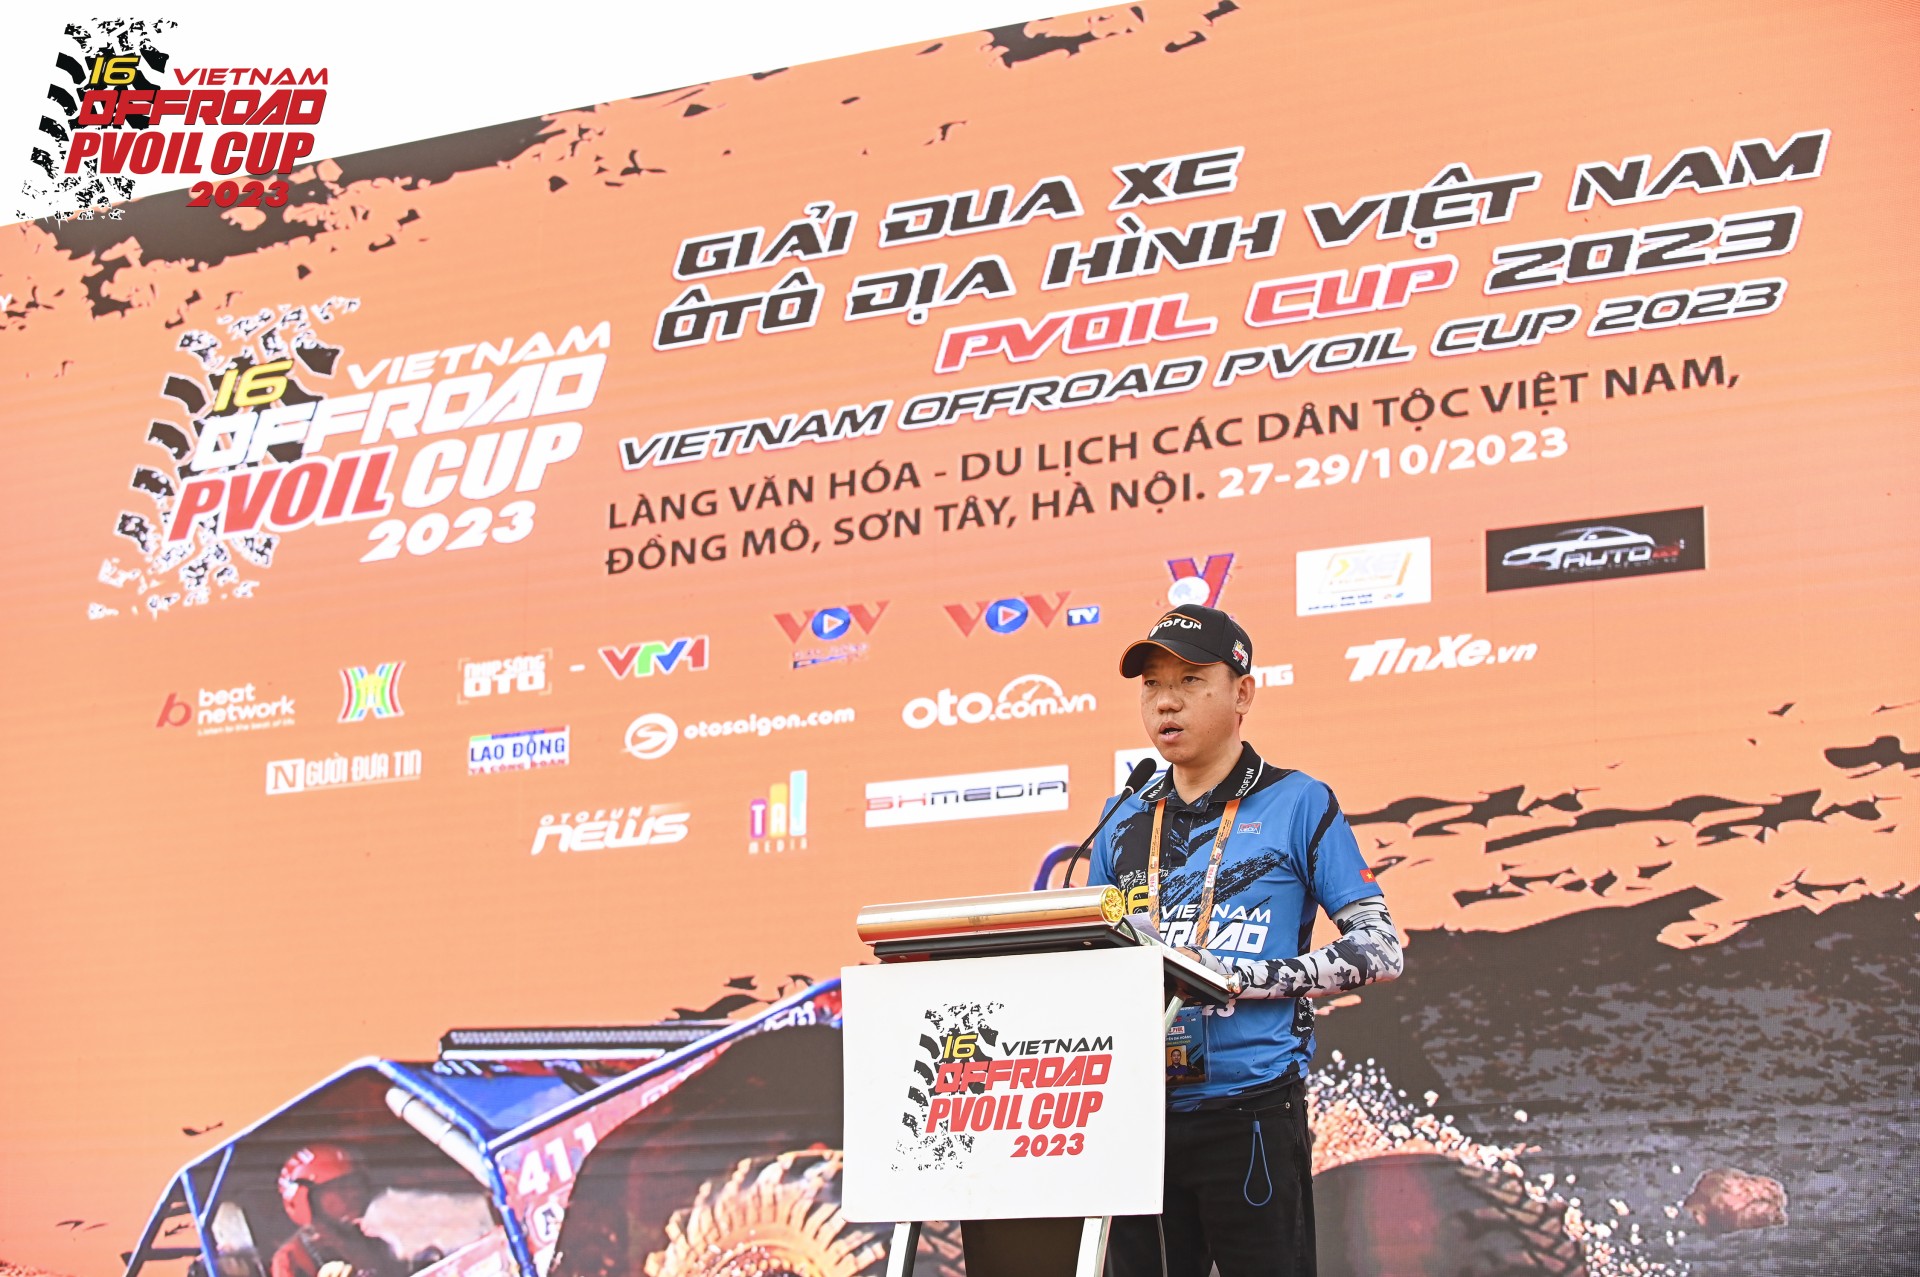 [PVOIL VOC 2023] Giải đua xe Ô tô Địa hình Việt Nam PVOIL CUP 2023 chính thức khai mạc